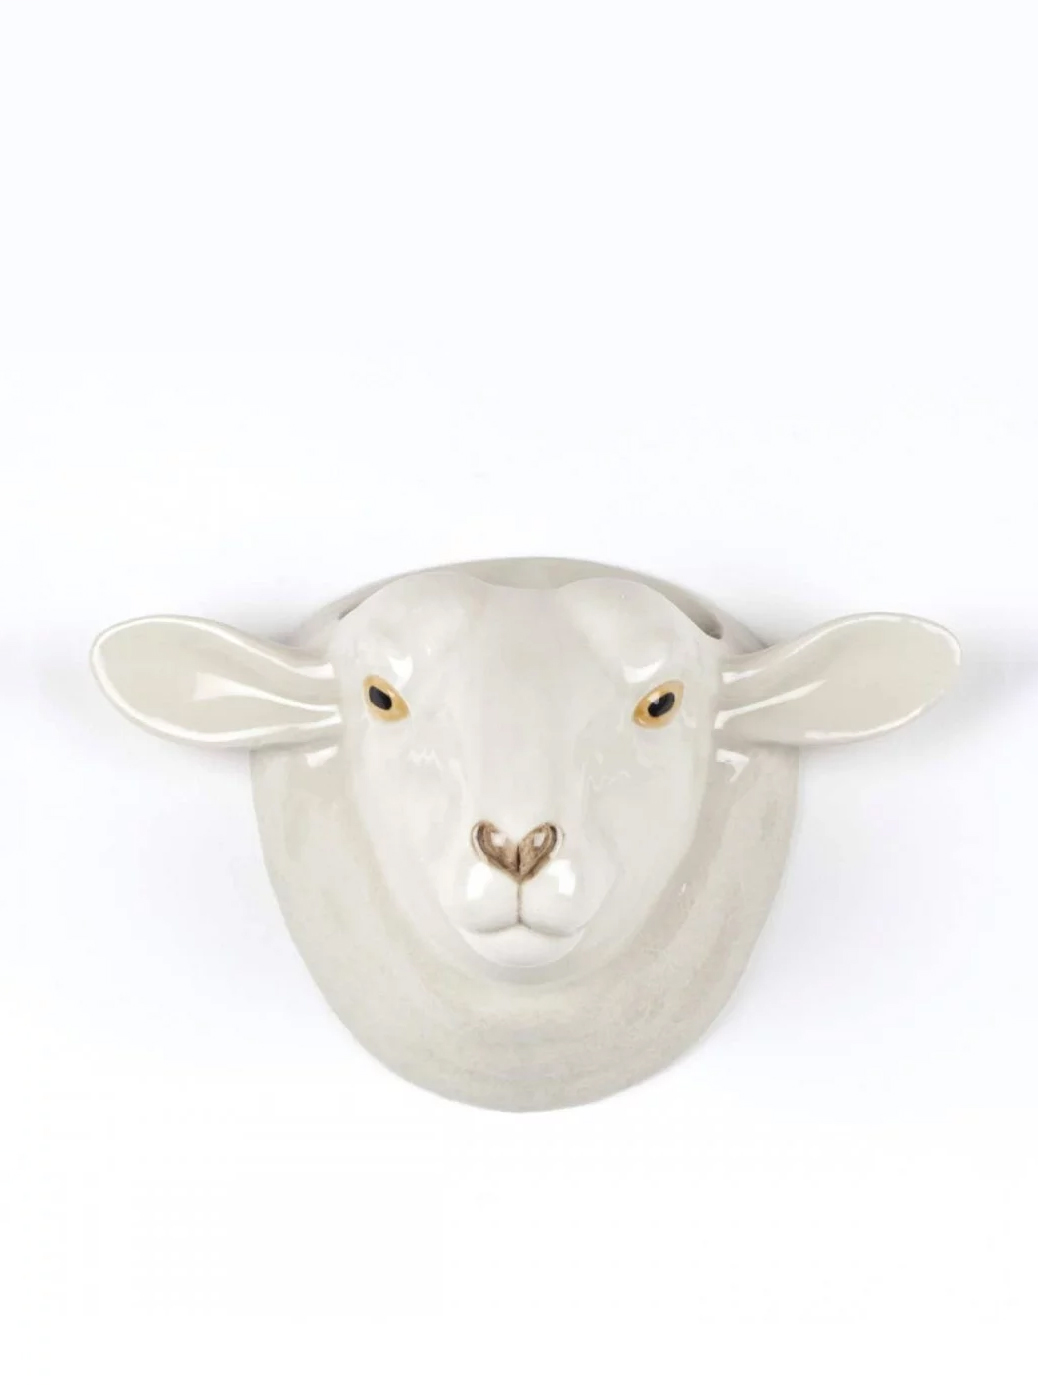 white-faced-suffolk-sheep-ceramic-wall-vase-kopier.jpg